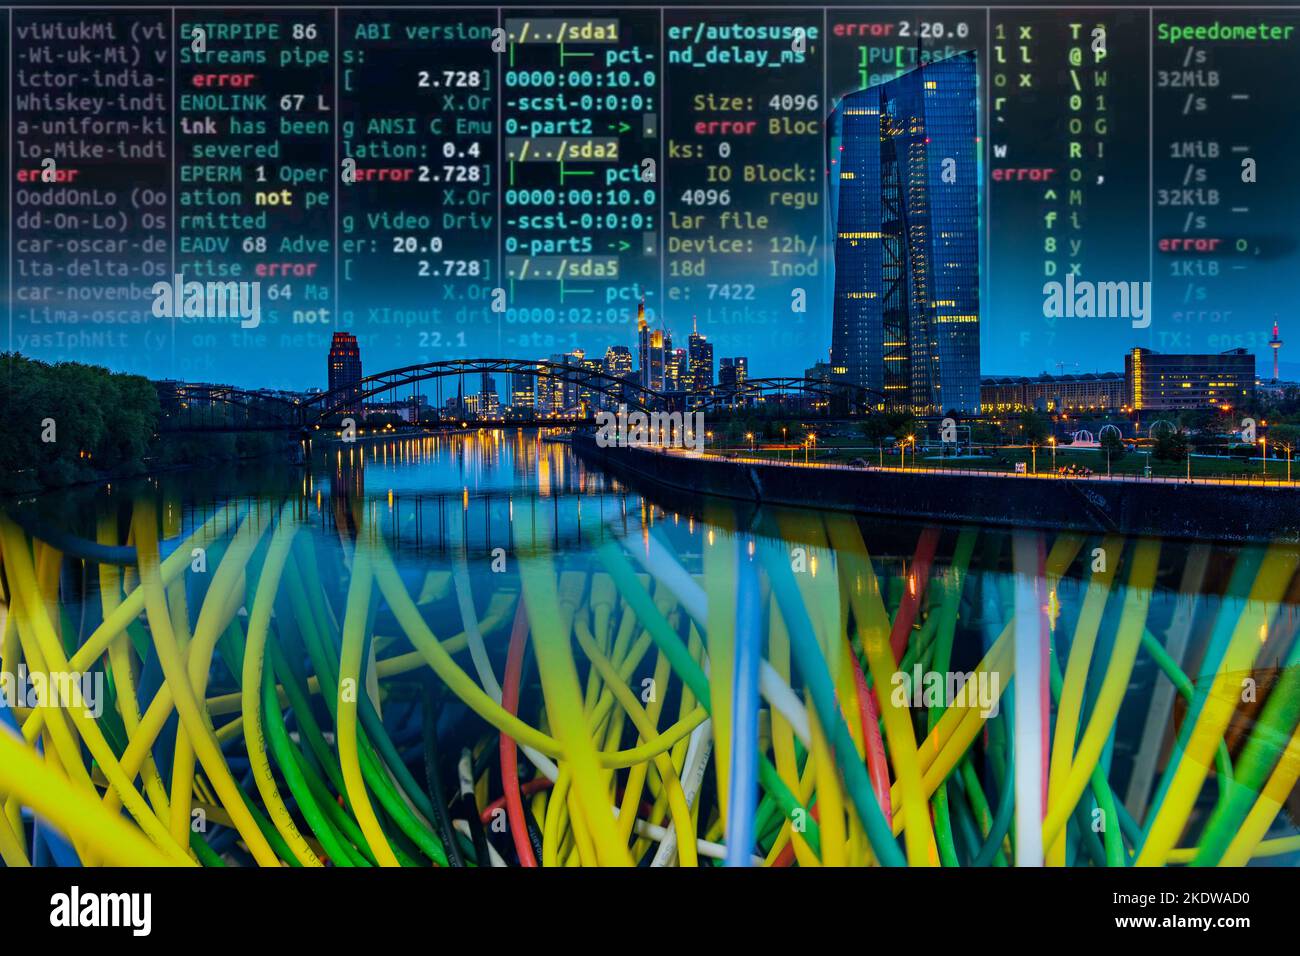 Infrastruttura critica per l'immagine simbolica, skyline di Francoforte sul meno, cavo dati, codice hacker, Foto Stock